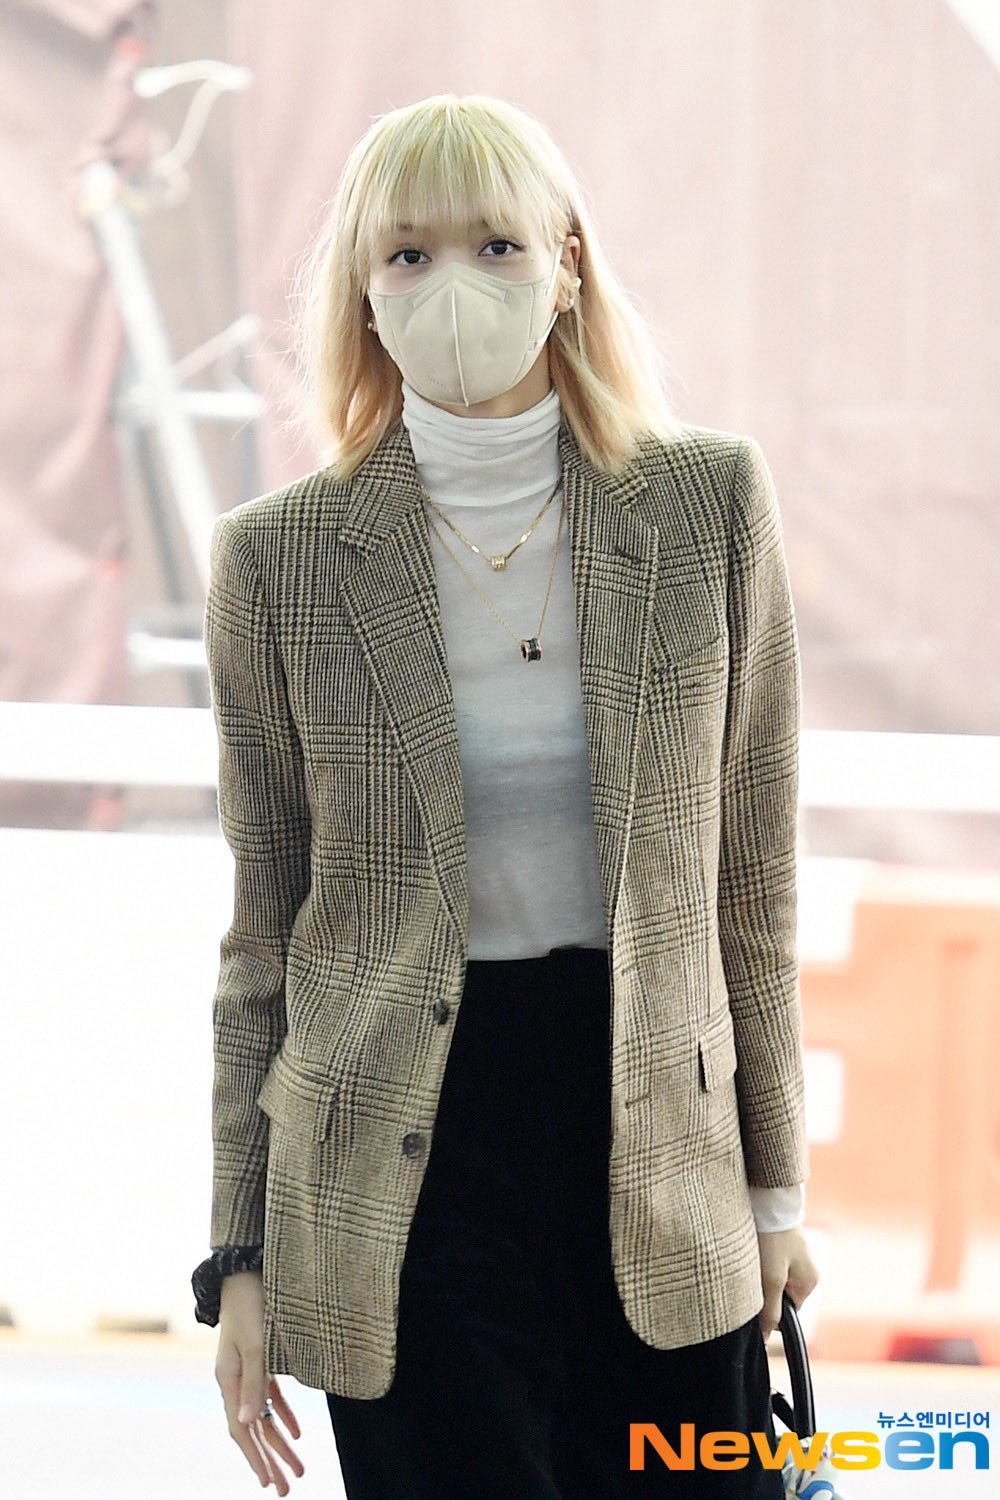 Lisa BLACKPINK vừa xuất hiện tại sân bay với mái tóc vàng gợi cảm và nổi bật. Bạn sẽ không muốn bỏ lỡ khoảnh khắc đáng yêu của nữ idol trong hình ảnh này đâu!